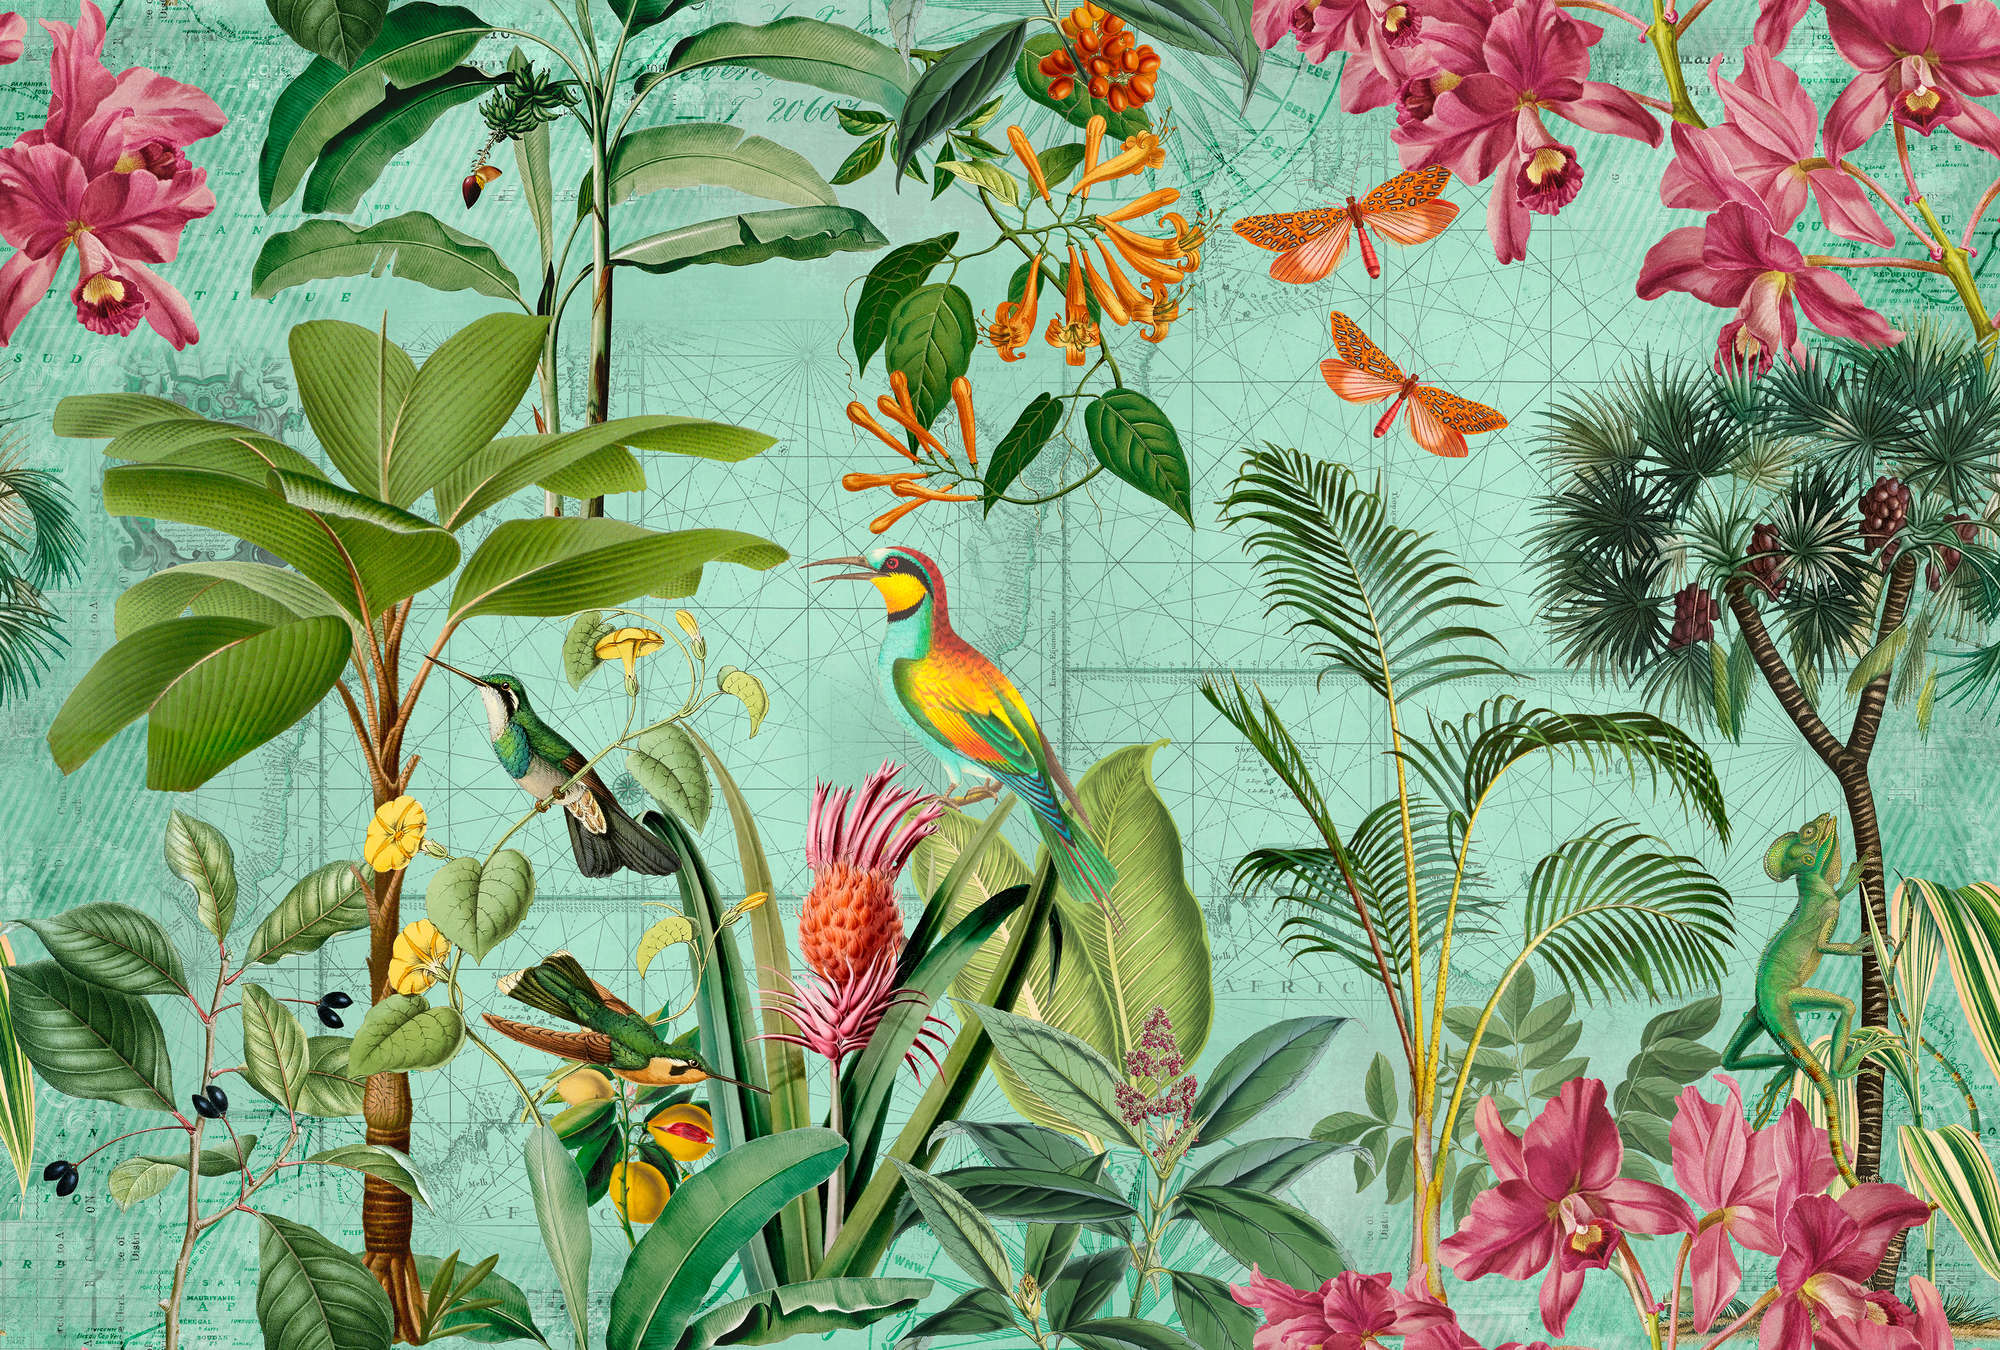             Mural de la selva de colores con árboles, flores y animales
        